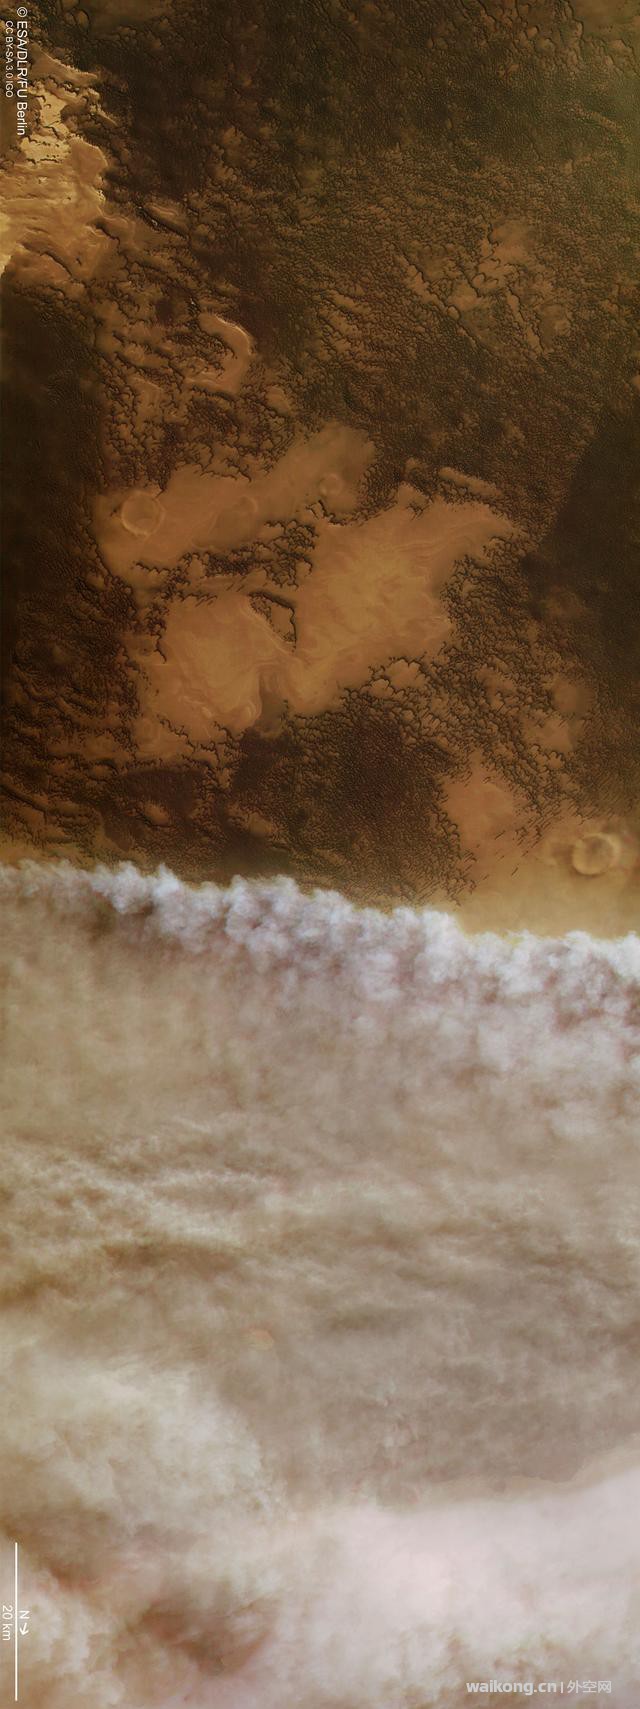 探测器拍到火星沙尘暴推进时的景象，如末日降临般恐怖-1.jpg